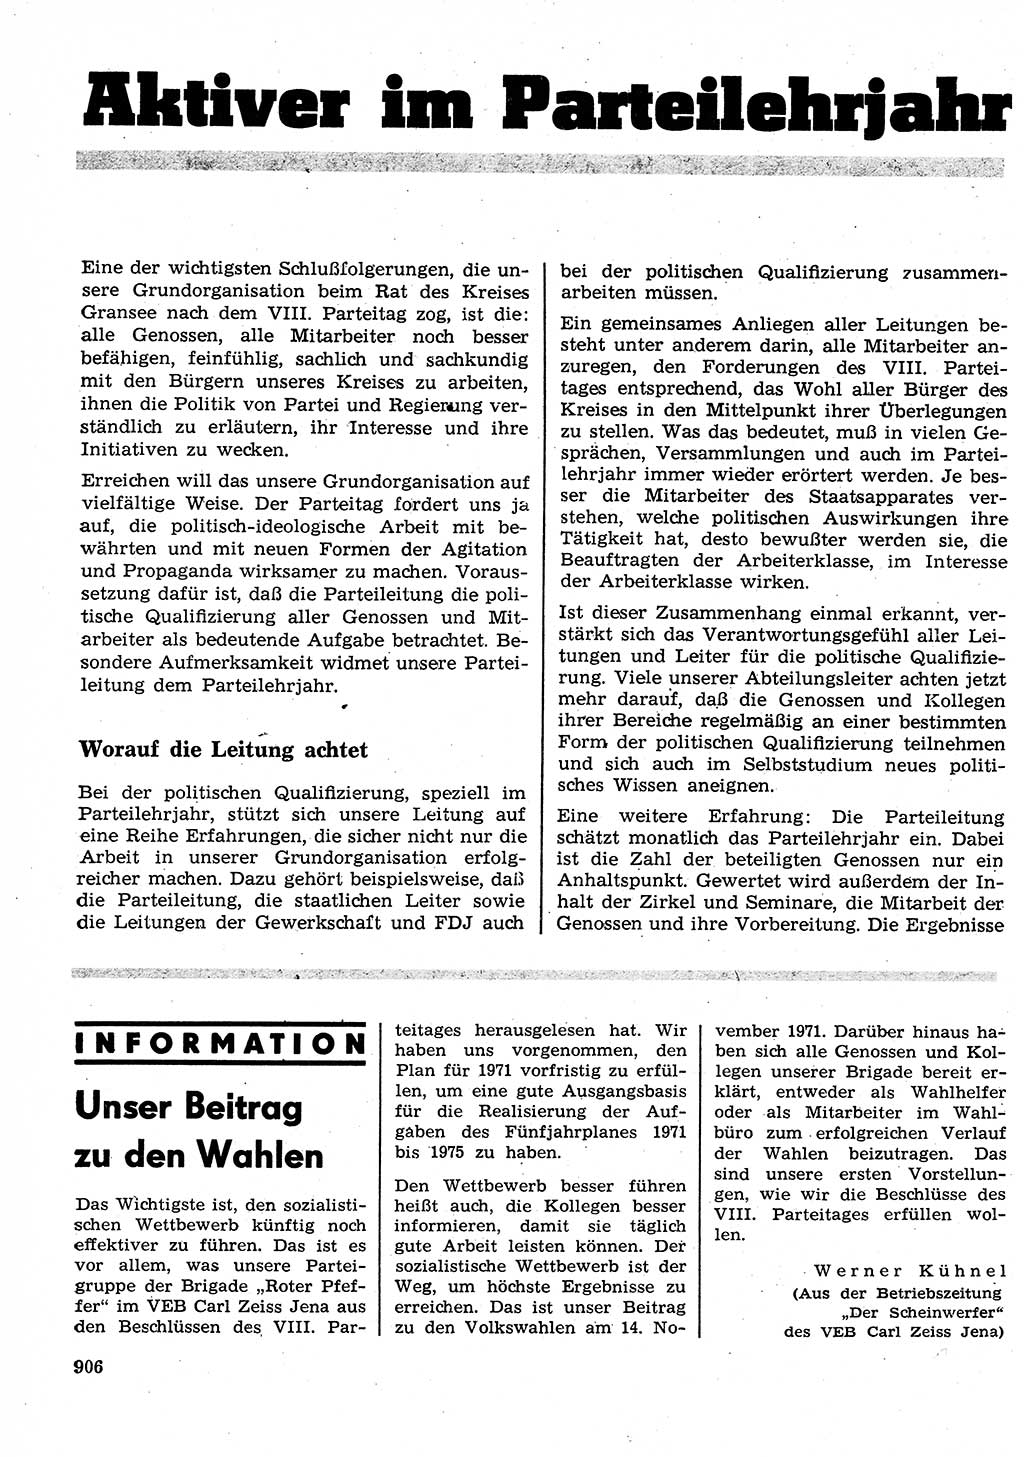 Neuer Weg (NW), Organ des Zentralkomitees (ZK) der SED (Sozialistische Einheitspartei Deutschlands) für Fragen des Parteilebens, 26. Jahrgang [Deutsche Demokratische Republik (DDR)] 1971, Seite 906 (NW ZK SED DDR 1971, S. 906)